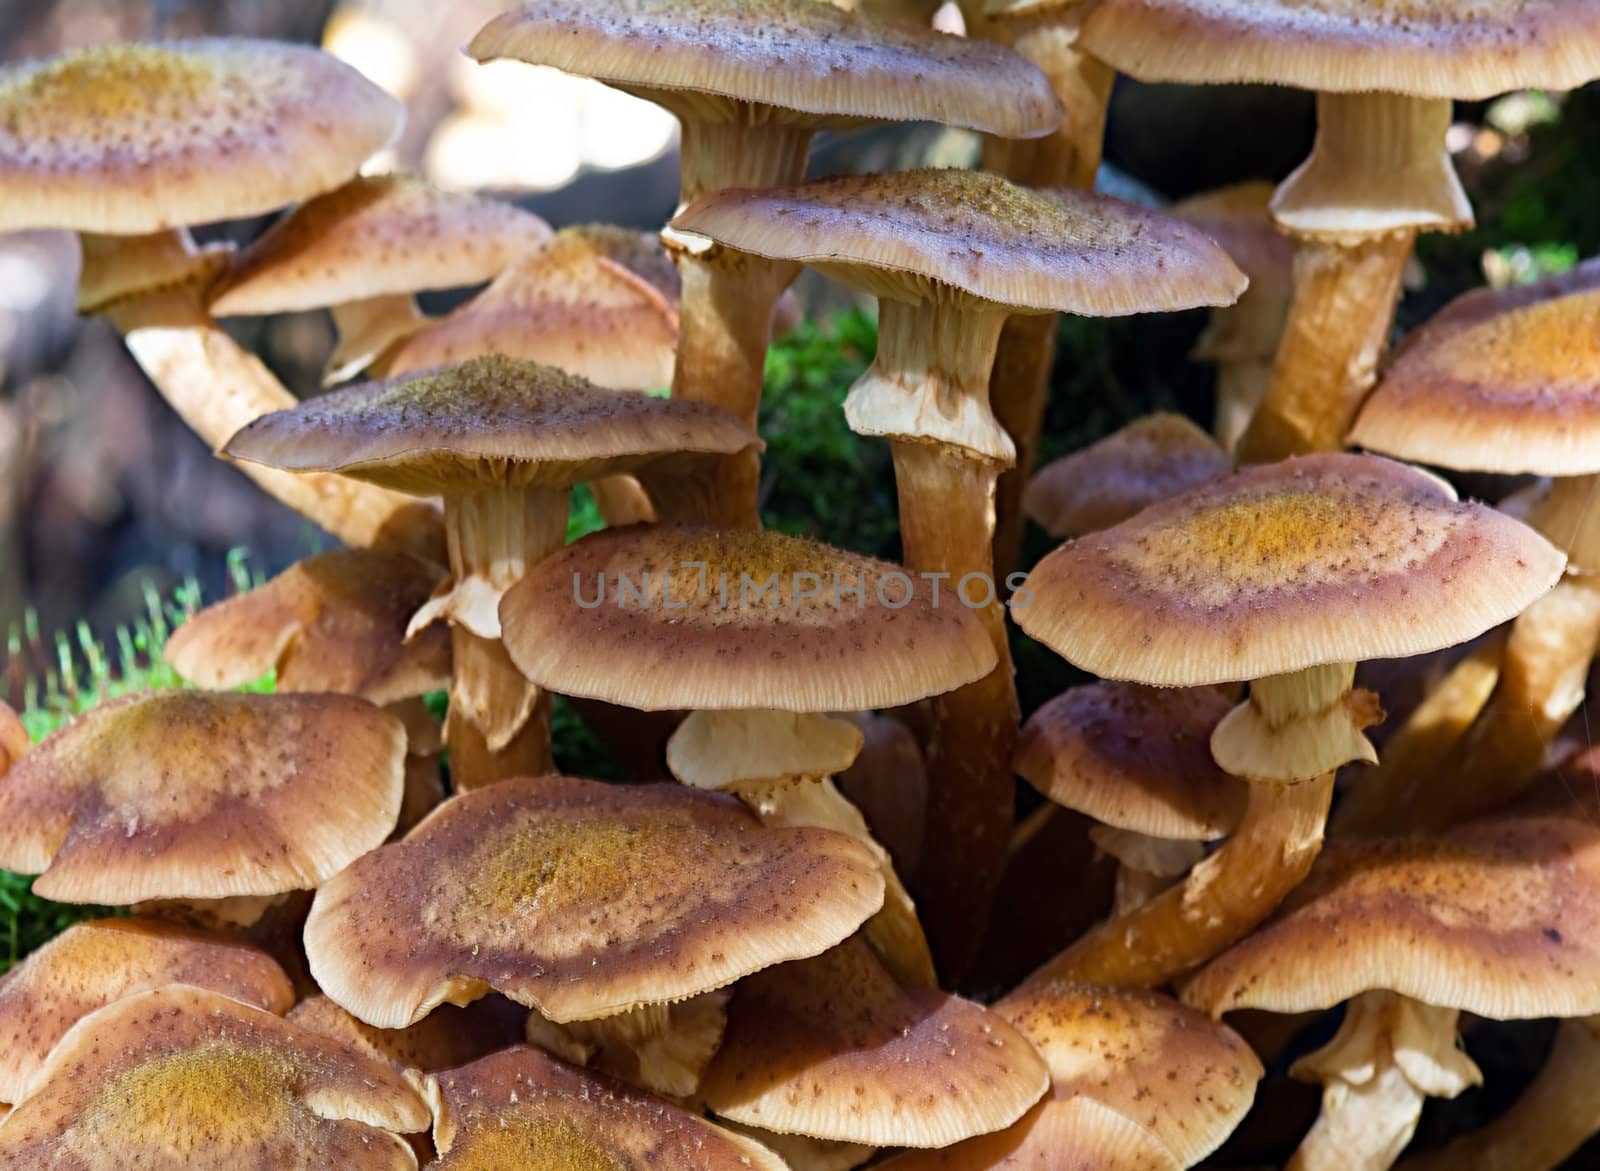 Mushrooms by baggiovara